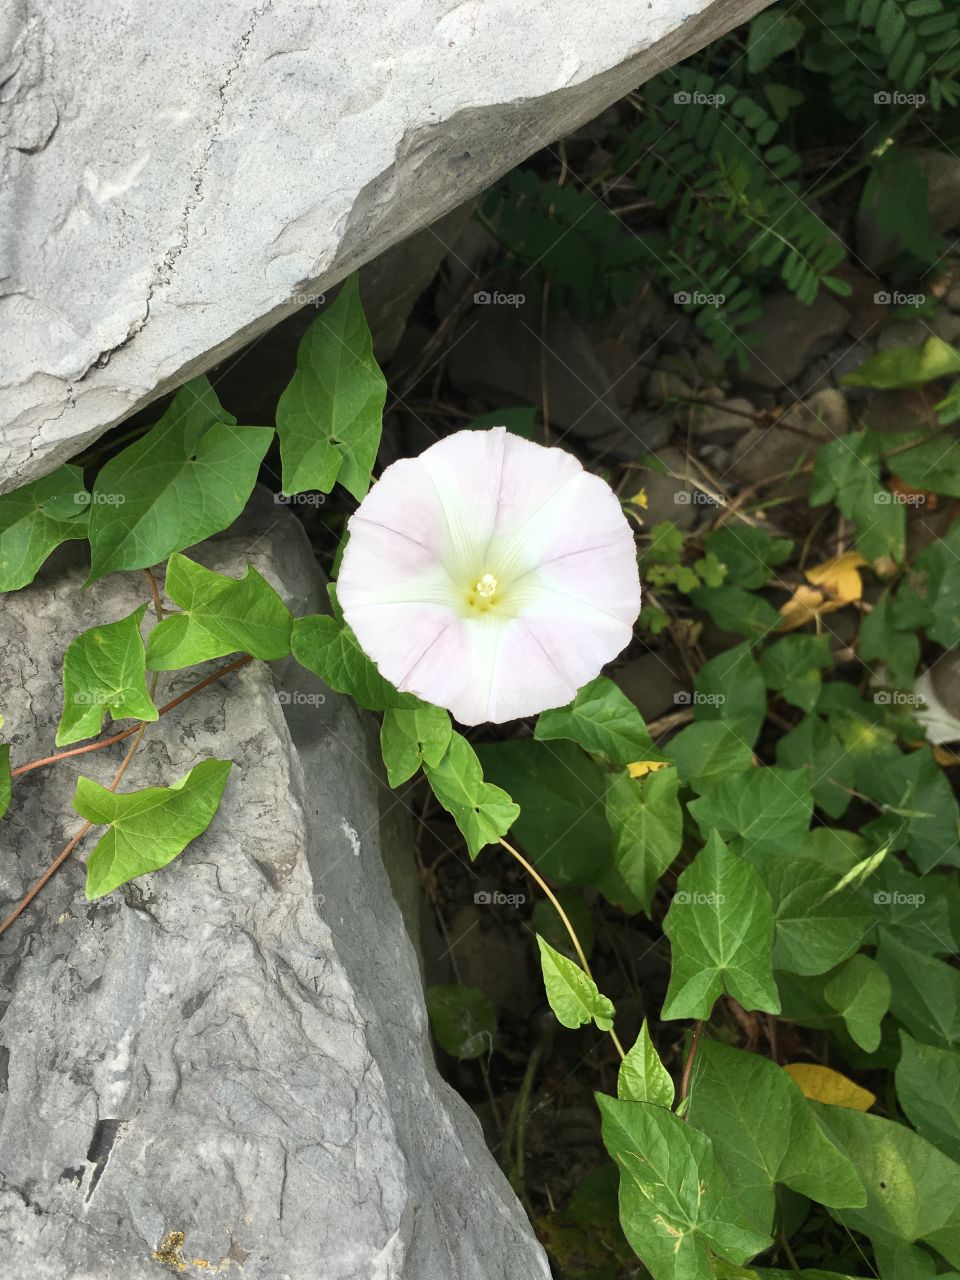 Rock flower